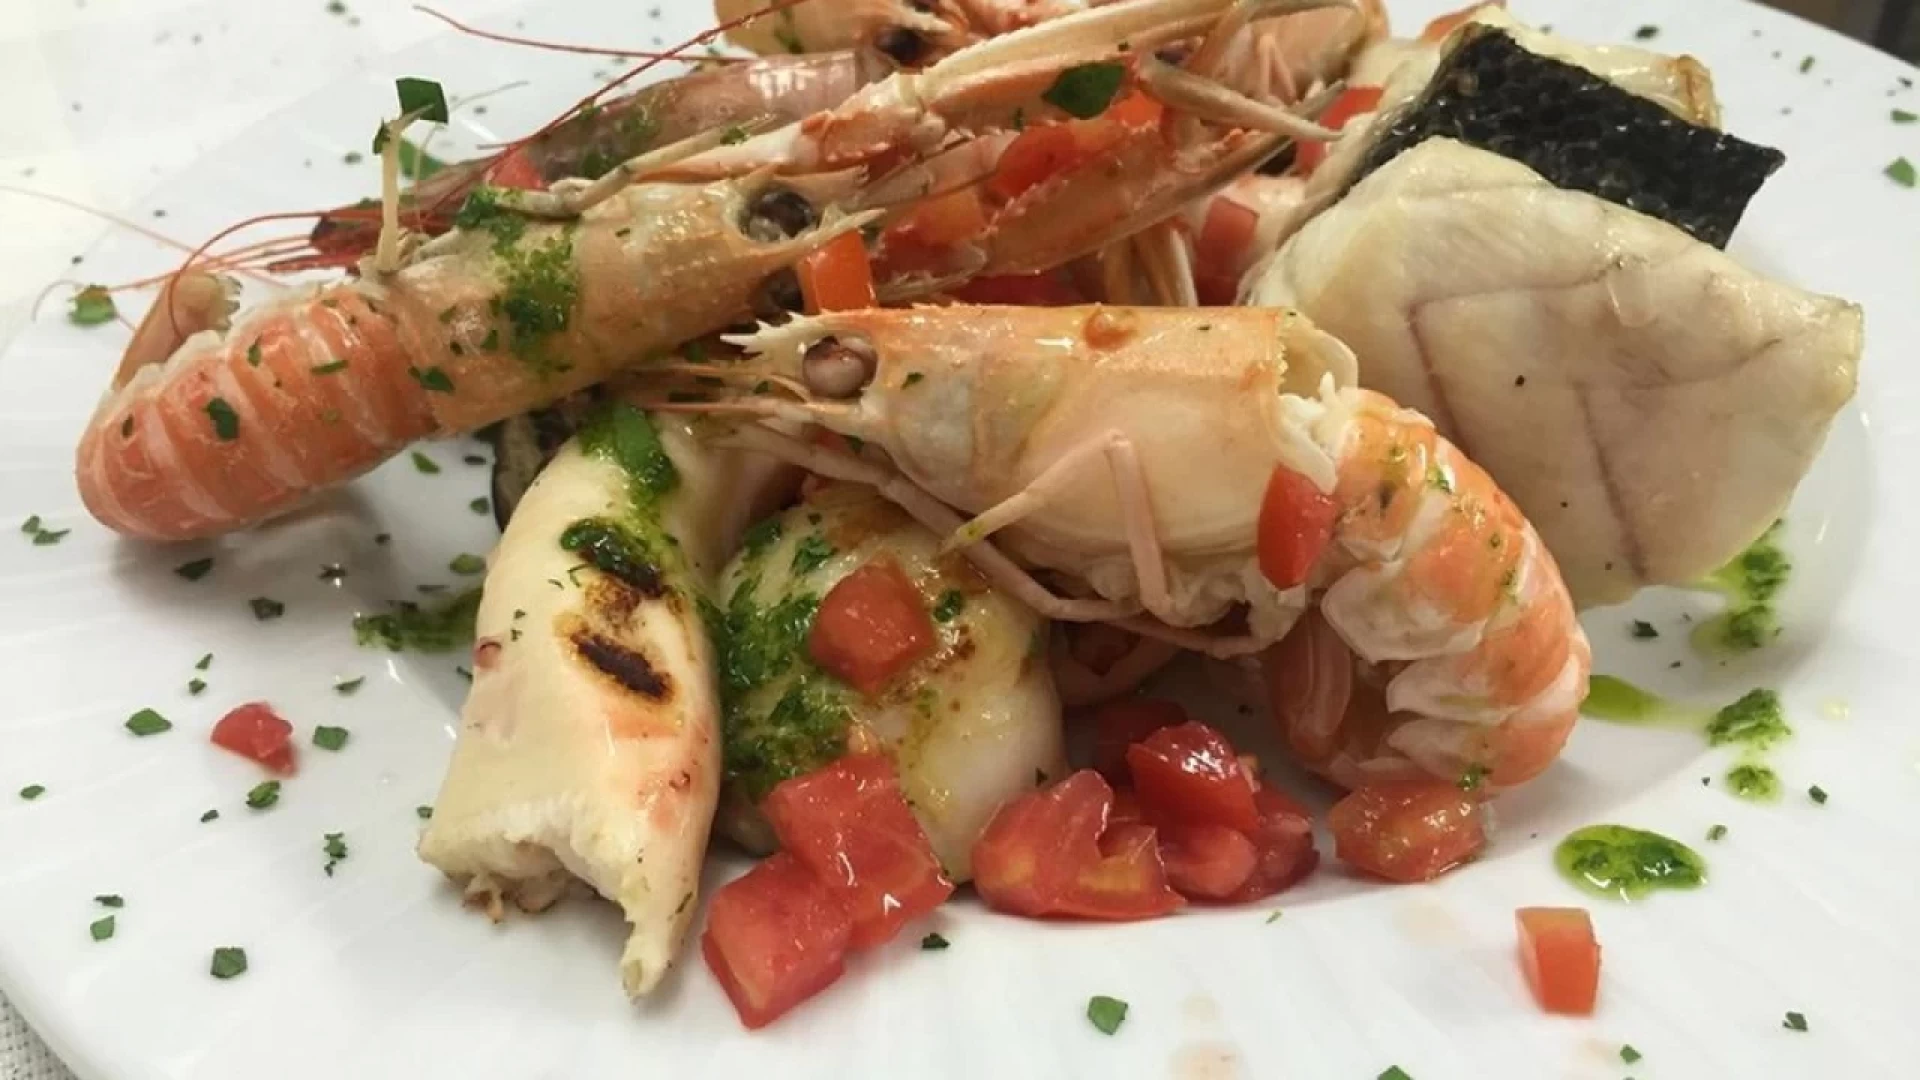 Colli a Volturno: al Ristorante "La Falconara" una nuova serata con cena a base di pesce. Appuntamento per venerdi' 14 giugno. Prenota il tuo tavolo.